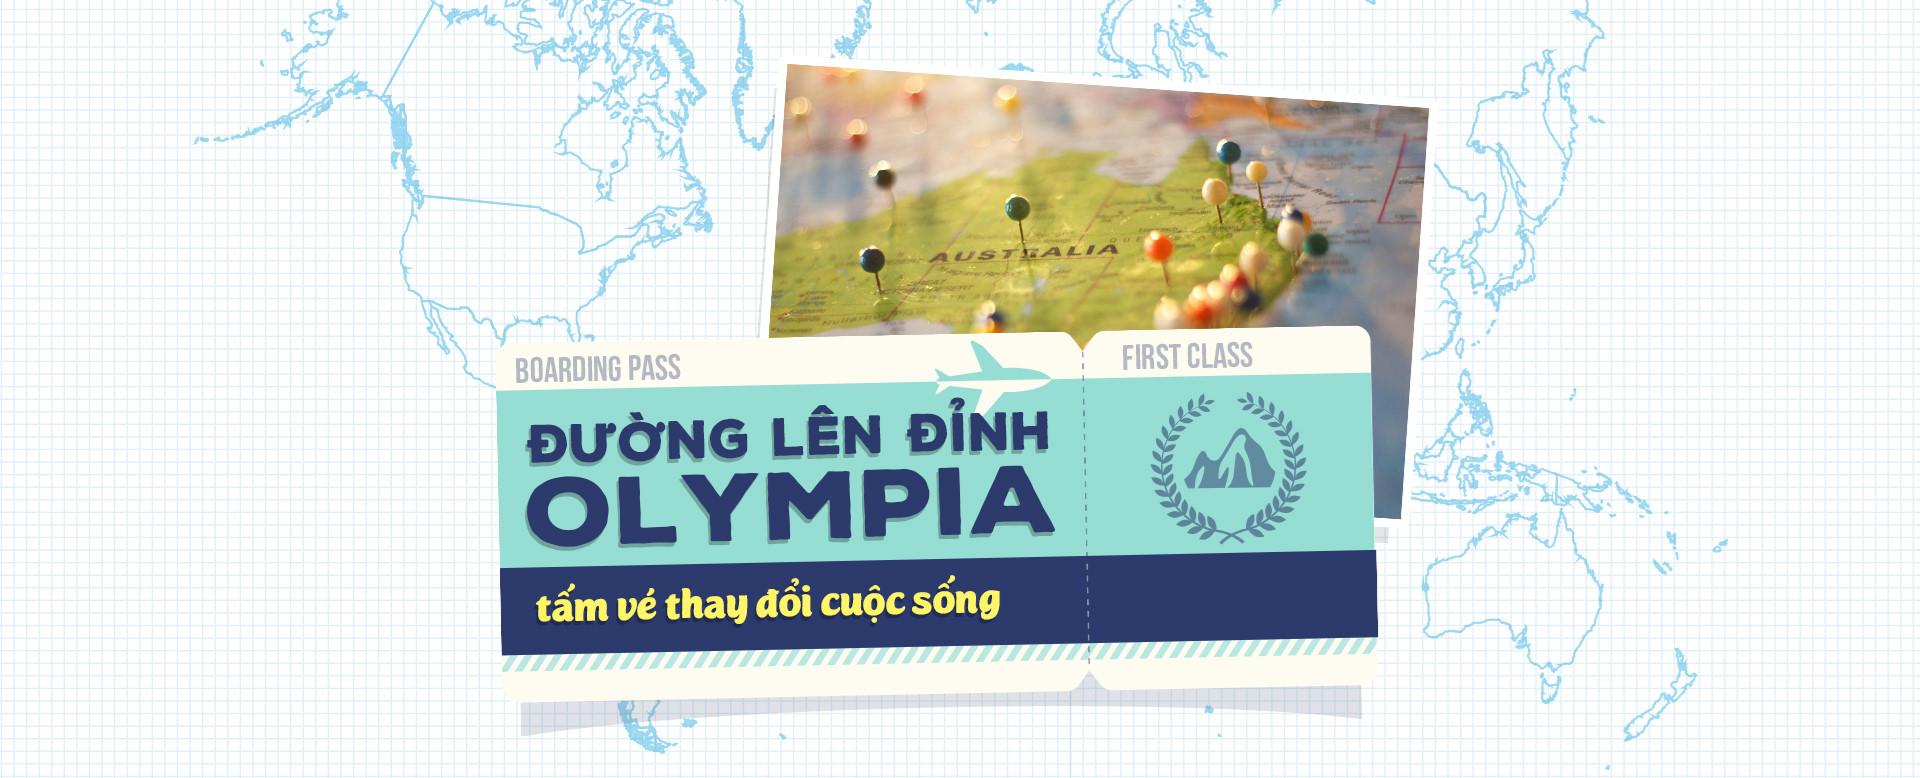 Đường lên đỉnh Olympia: Giấc mộng đổi đời cho giới trẻ Việt-1